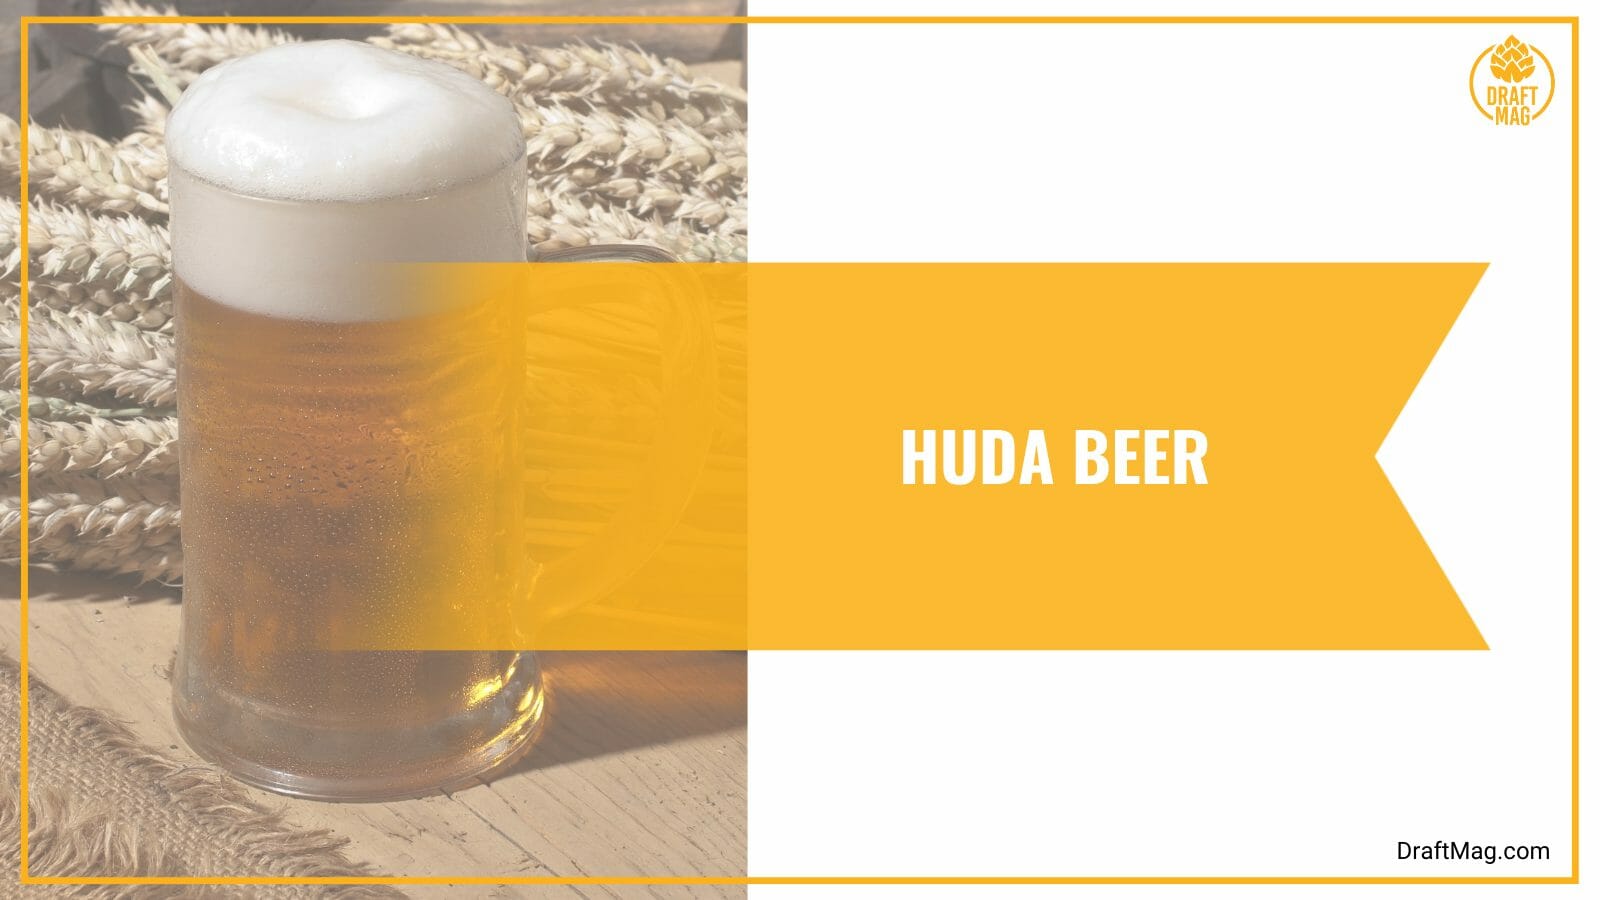 Huda beer a golden treasure